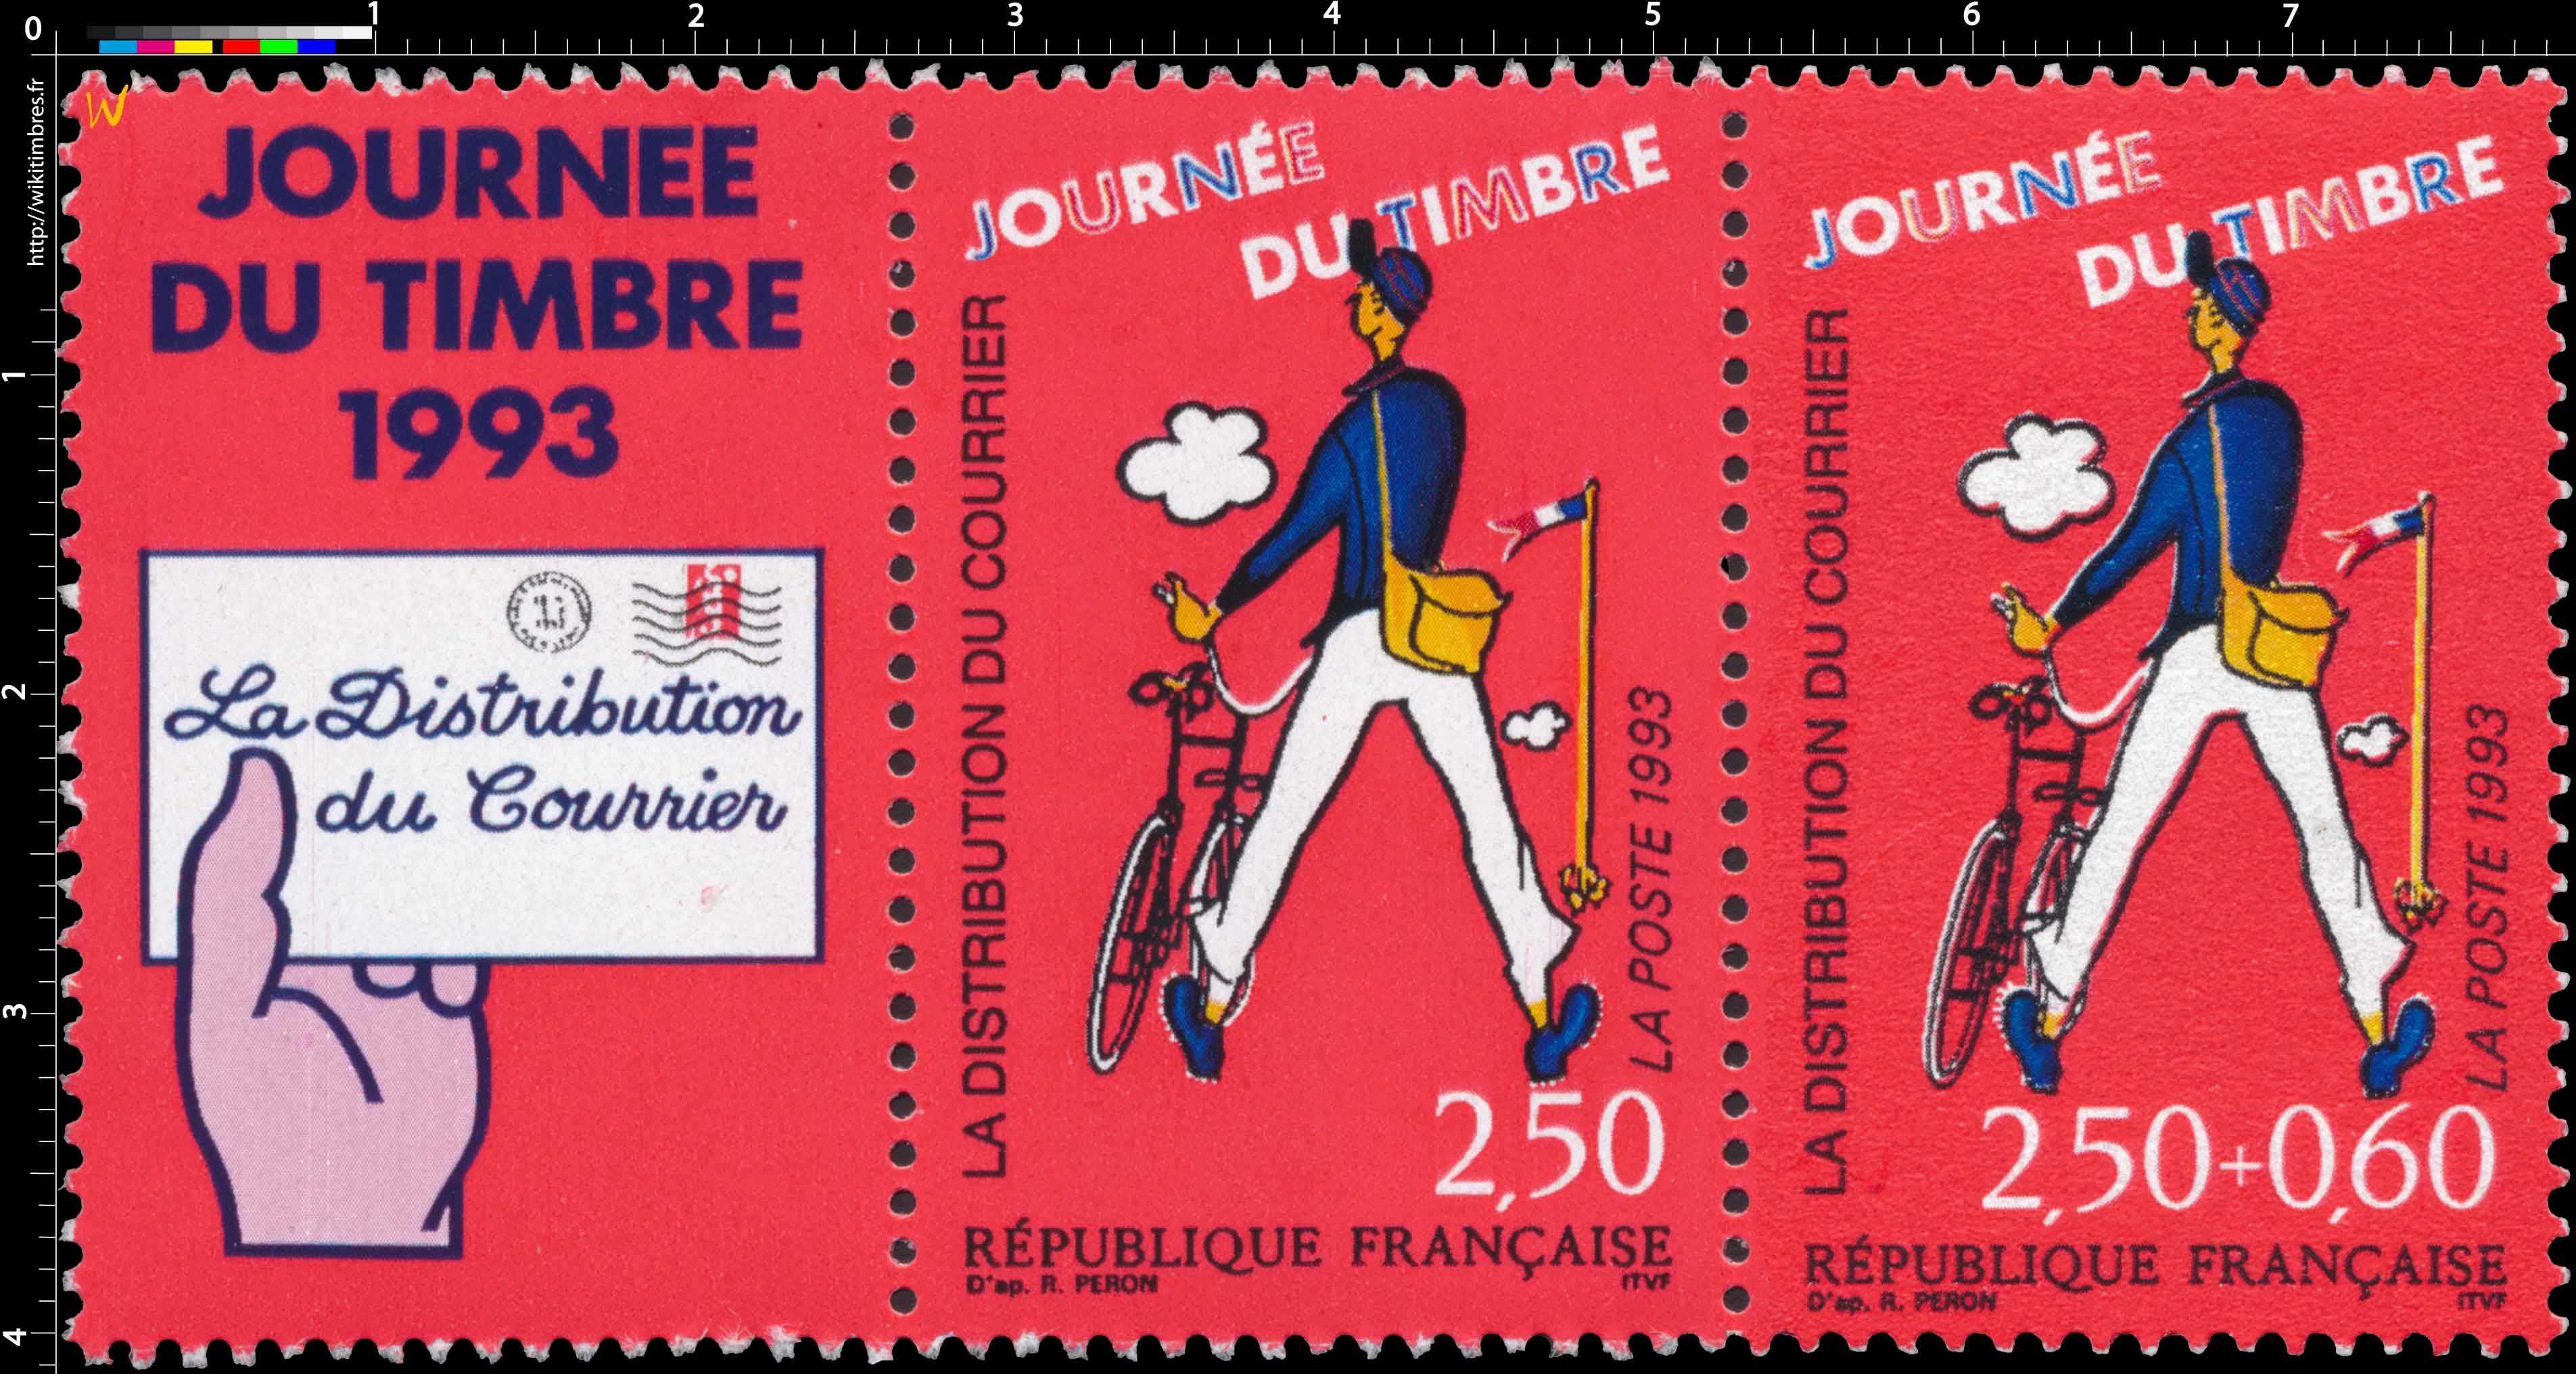 1993 JOURNÉE DU TIMBRE LA DISTRIBUTION DU COURRIER